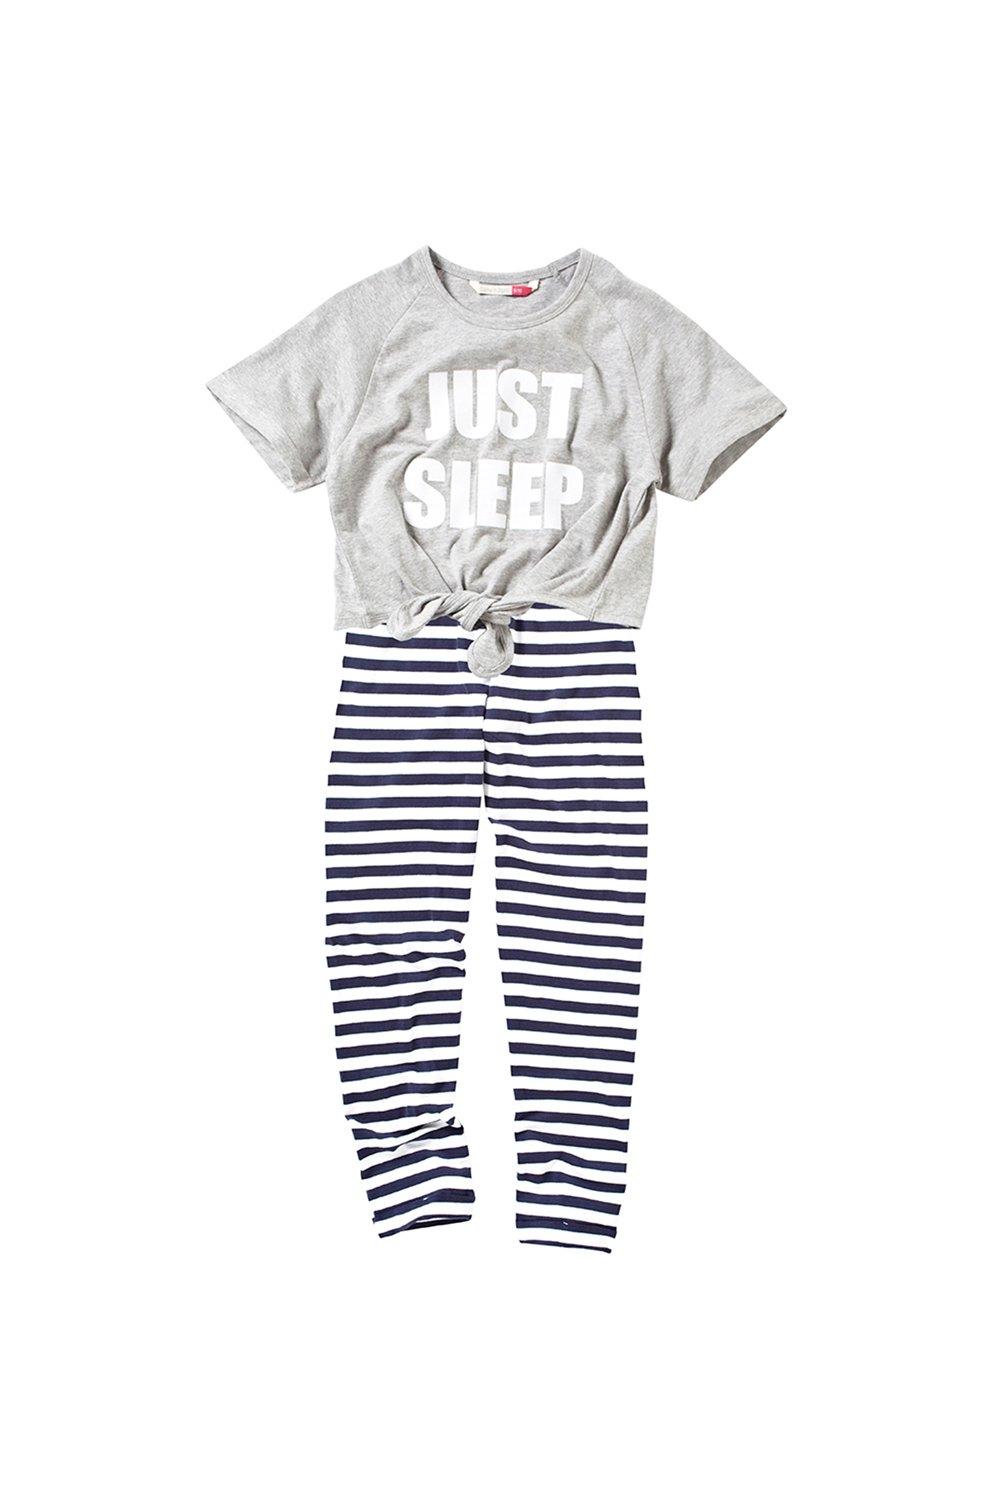 Girls Just Sleep Pyjama Set